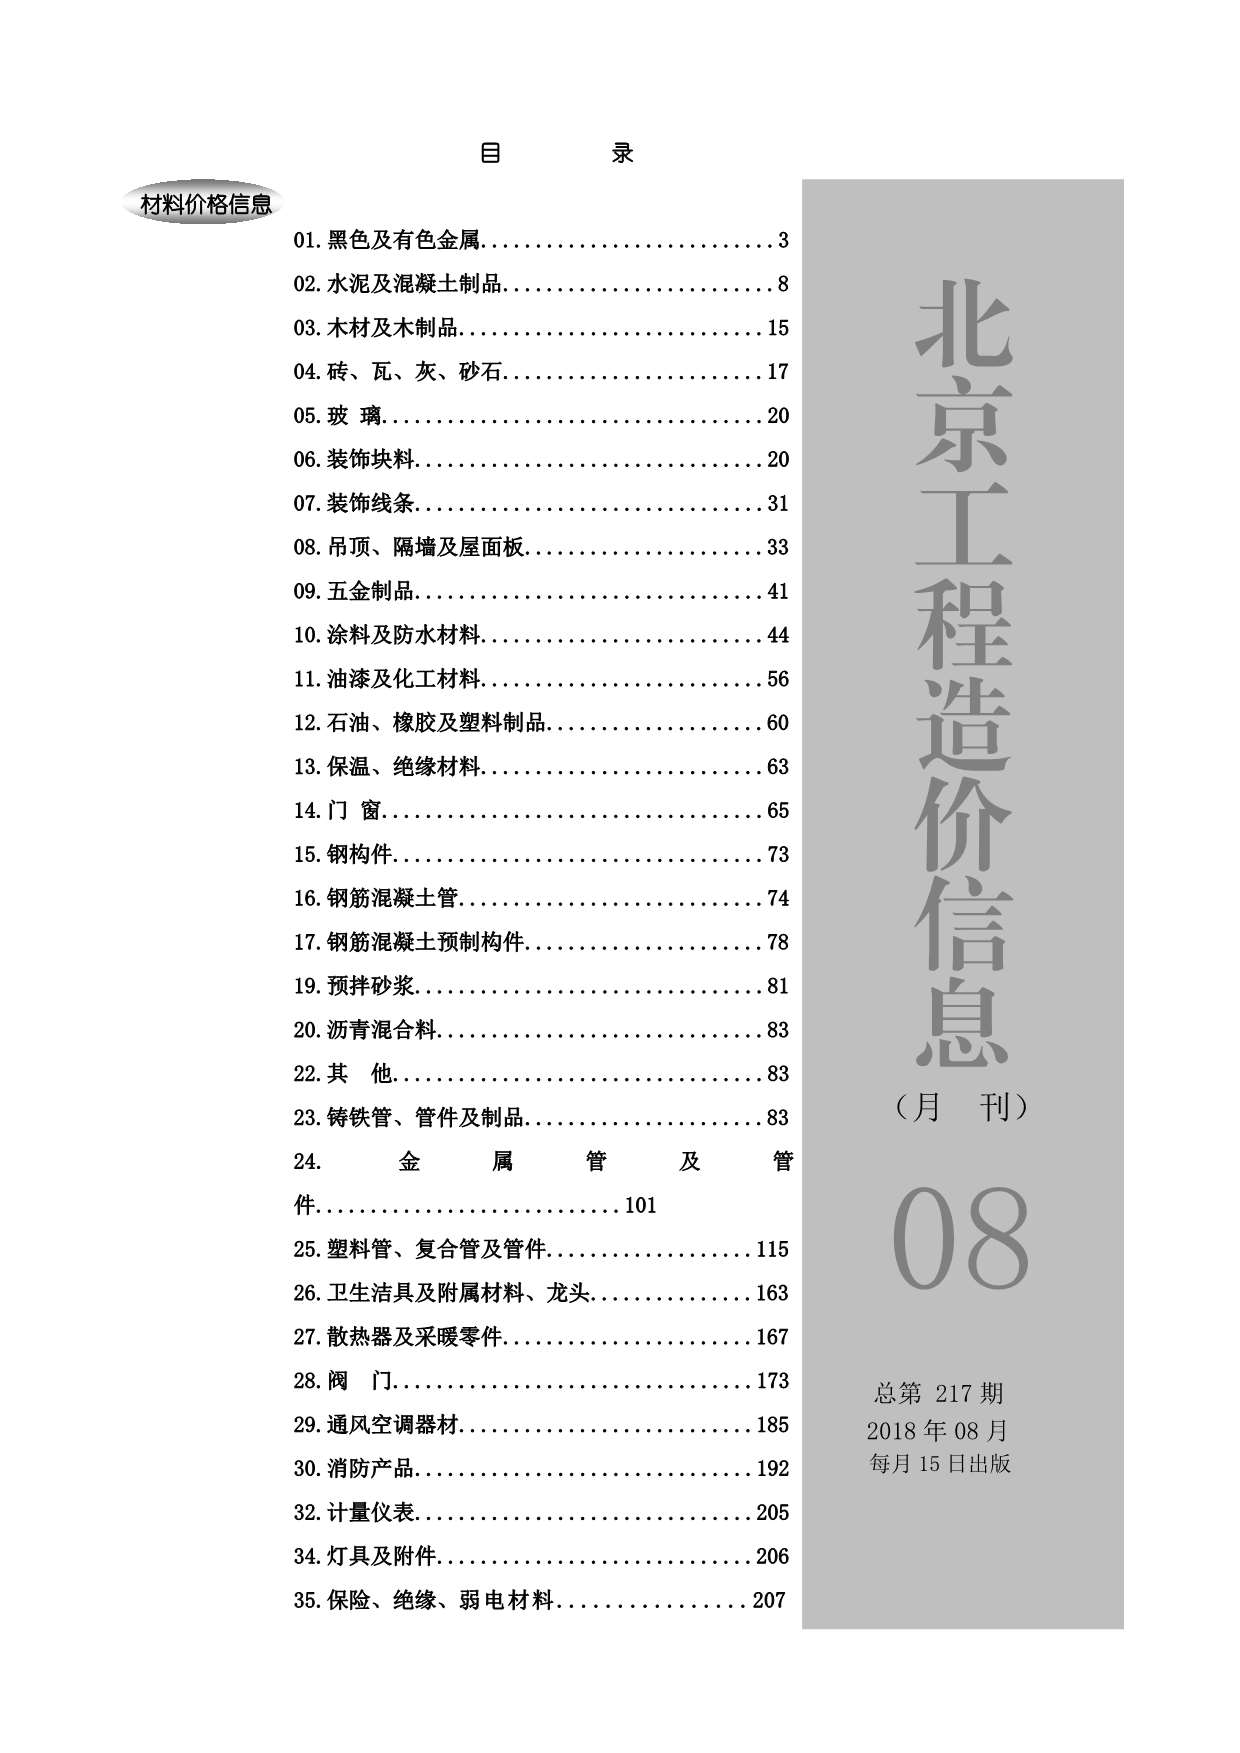 北京市2018年8月工程信息价_北京市信息价期刊PDF扫描件电子版